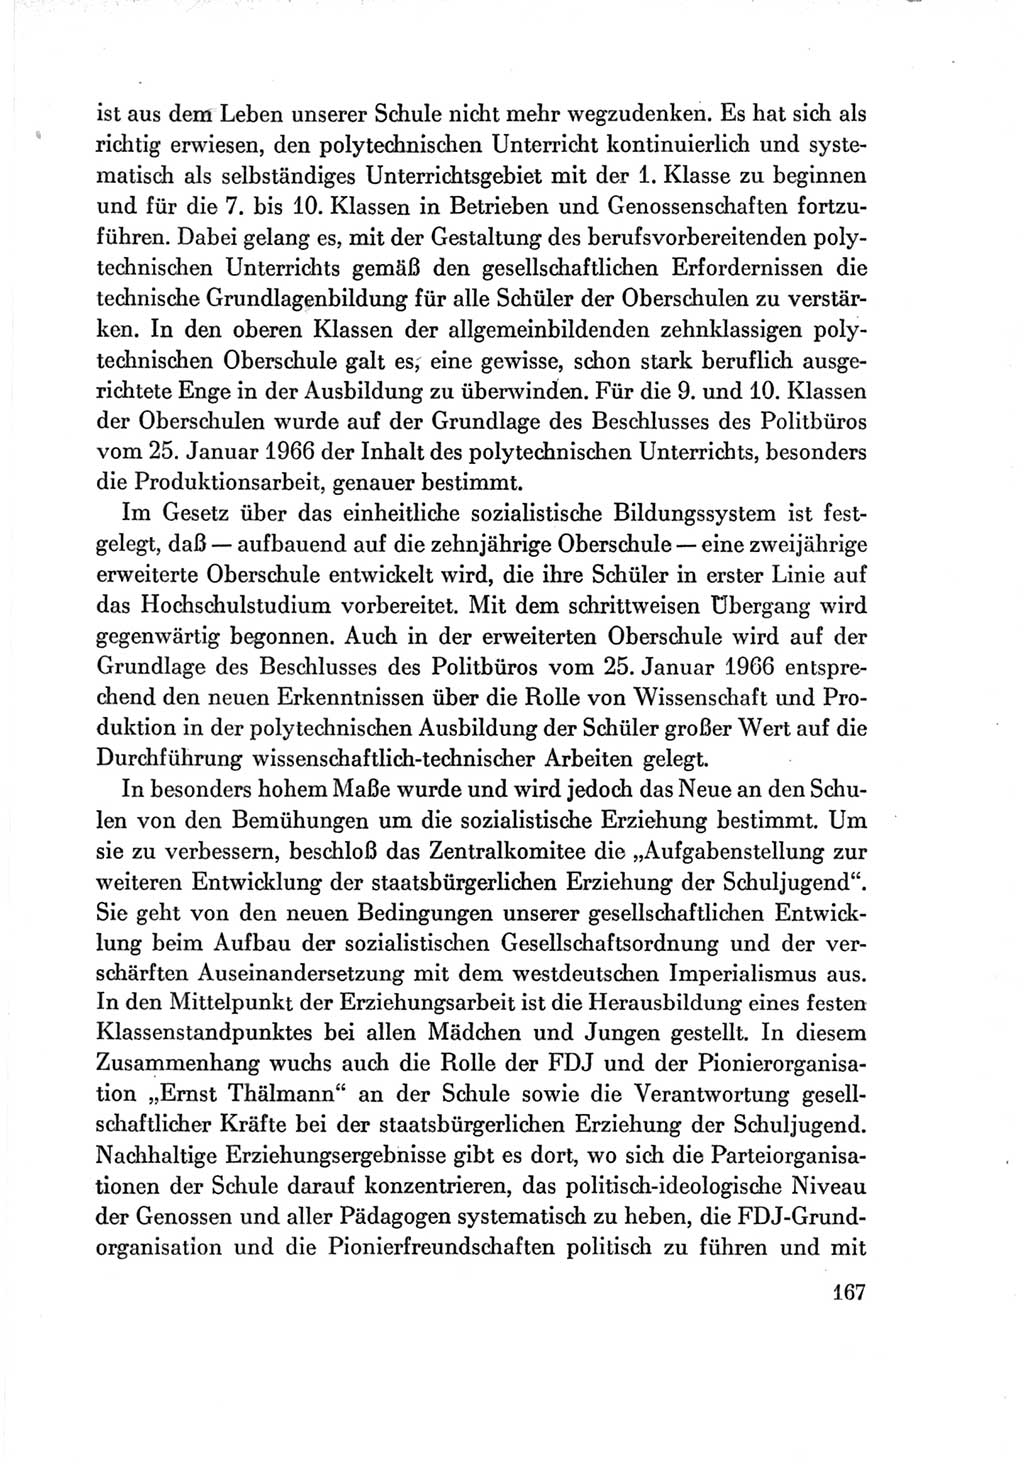 Protokoll der Verhandlungen des Ⅶ. Parteitages der Sozialistischen Einheitspartei Deutschlands (SED) [Deutsche Demokratische Republik (DDR)] 1967, Band Ⅳ, Seite 167 (Prot. Verh. Ⅶ. PT SED DDR 1967, Bd. Ⅳ, S. 167)